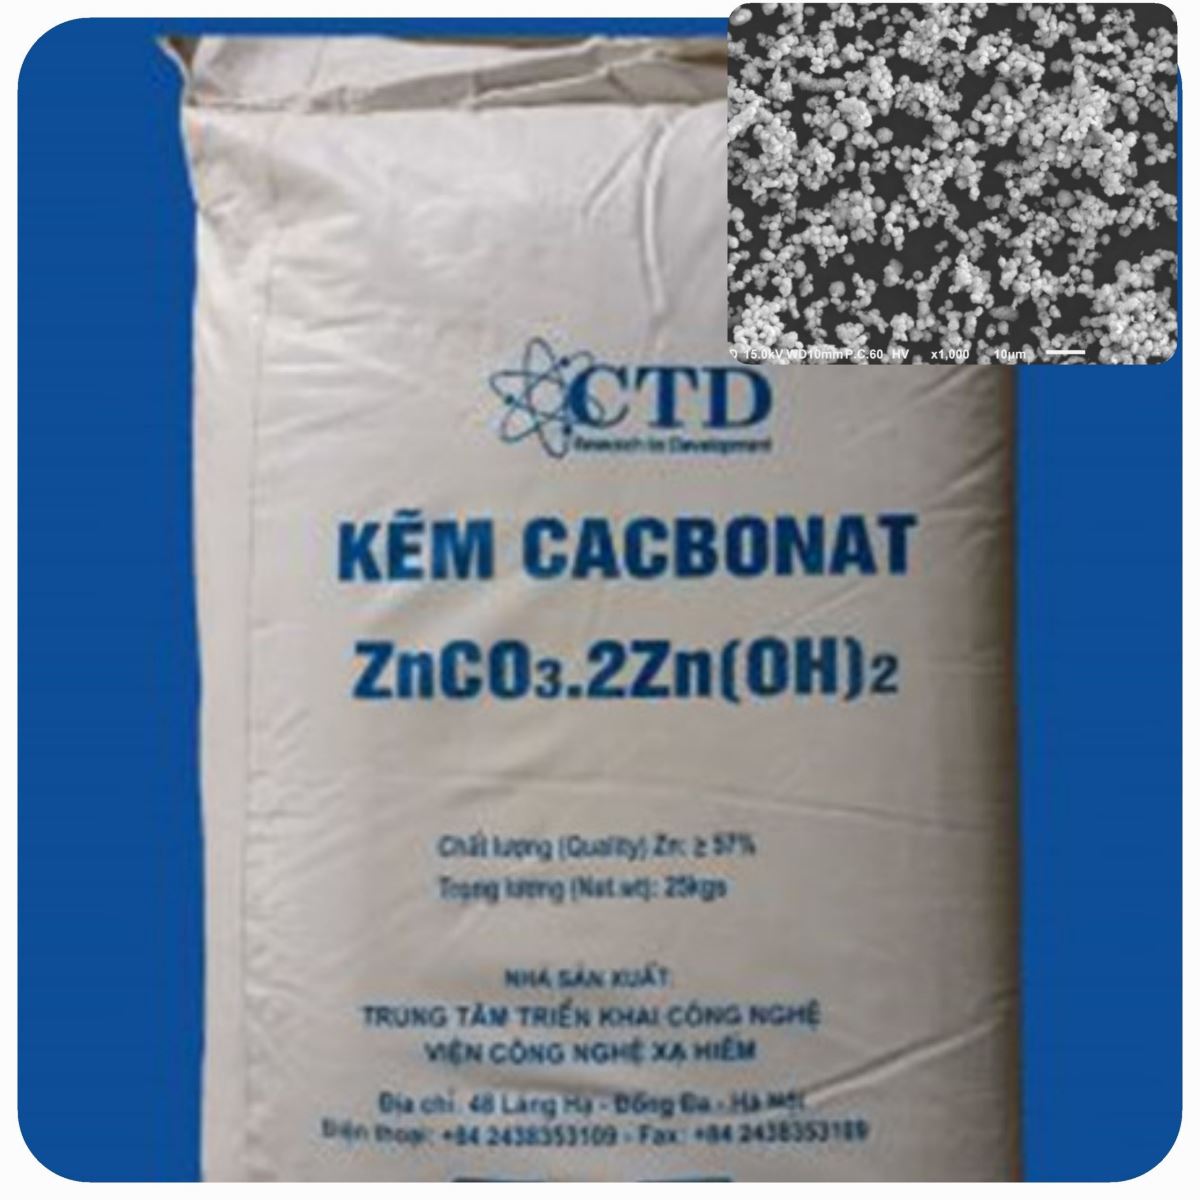 Hoàn thiện công nghệ và xây dựng dây chuyền sản xuất kẽm cacbonat bazơ từ phế liệu chứa kẽm